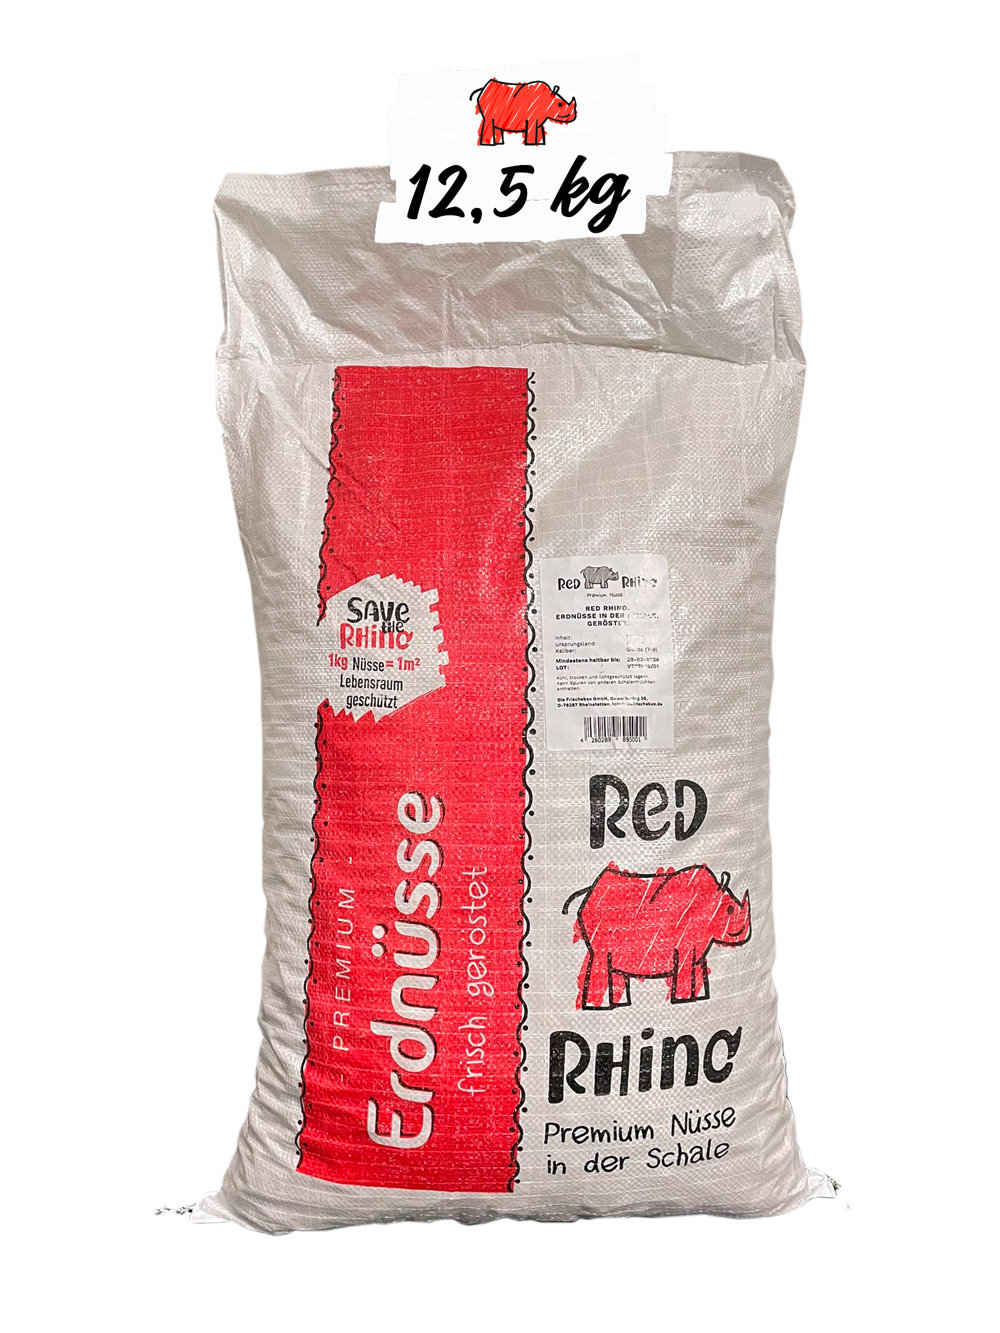 Red Rhino Erdnüsse im großen 12,5 kg Sack